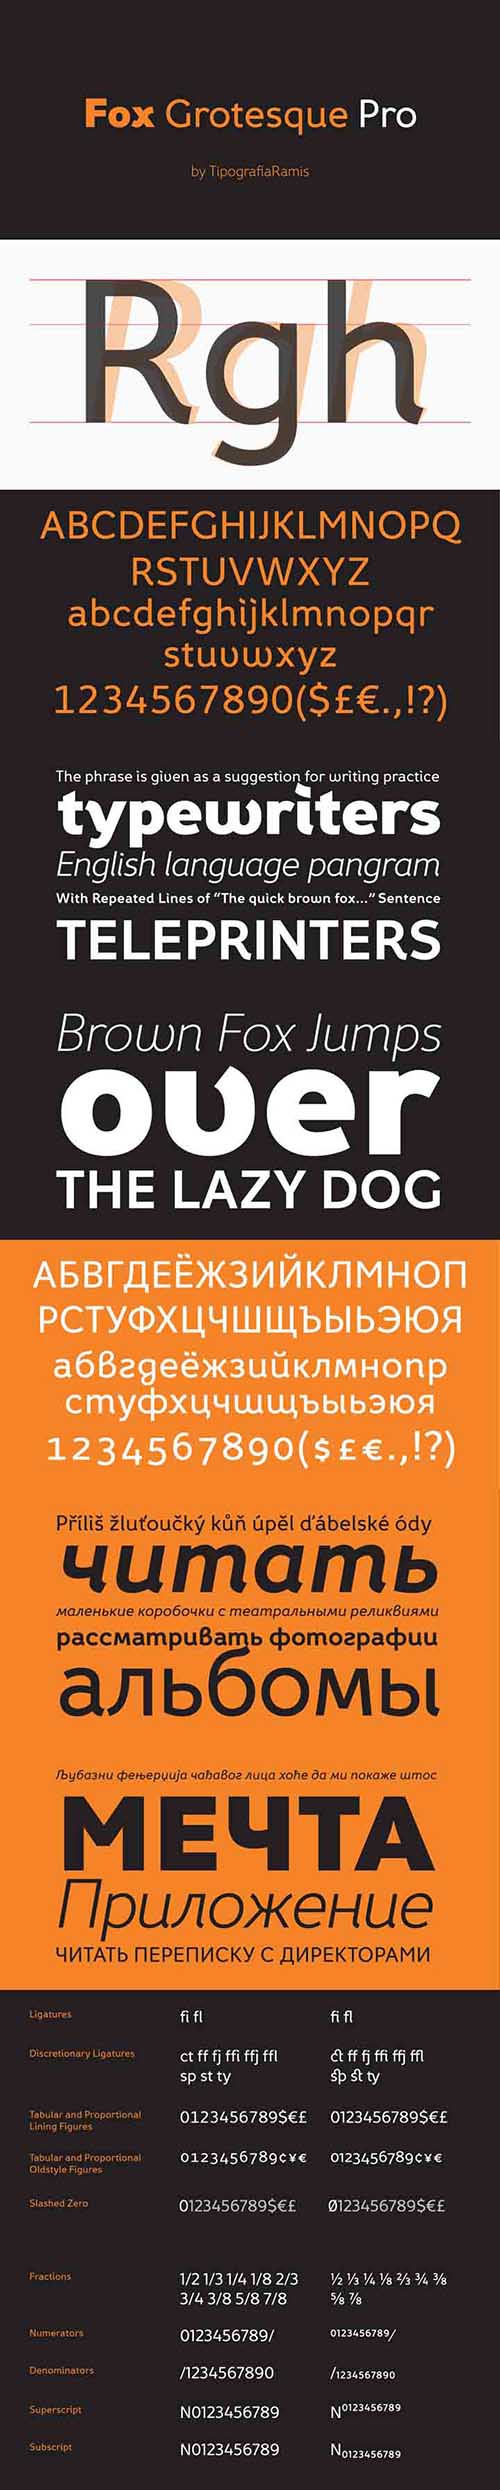 Fox Grotesque Pro Font Family